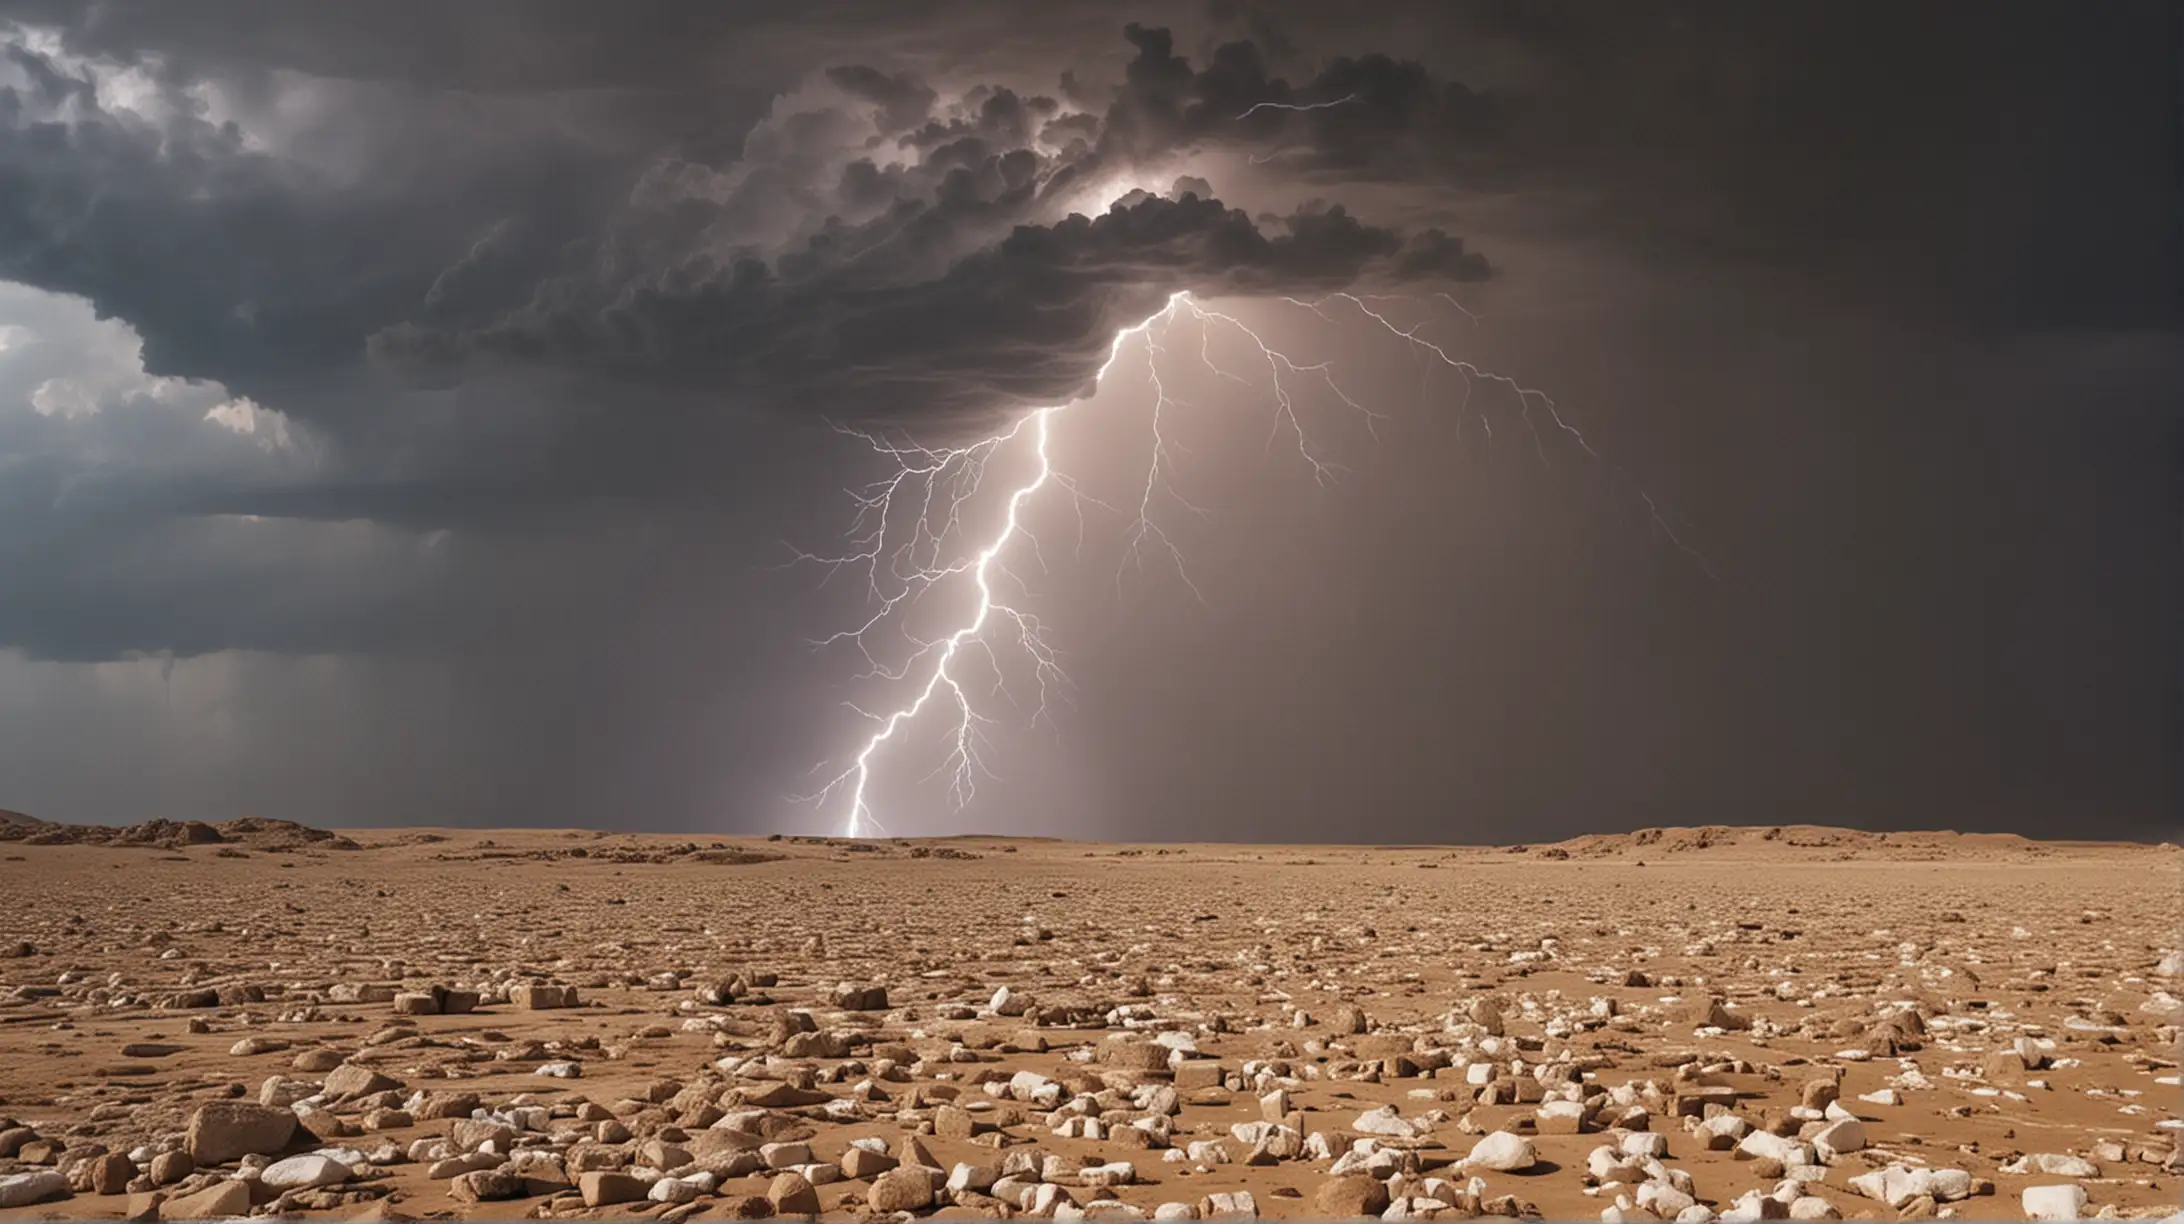 Biblical Scene Hailstorm Strikes Egyptian Desert